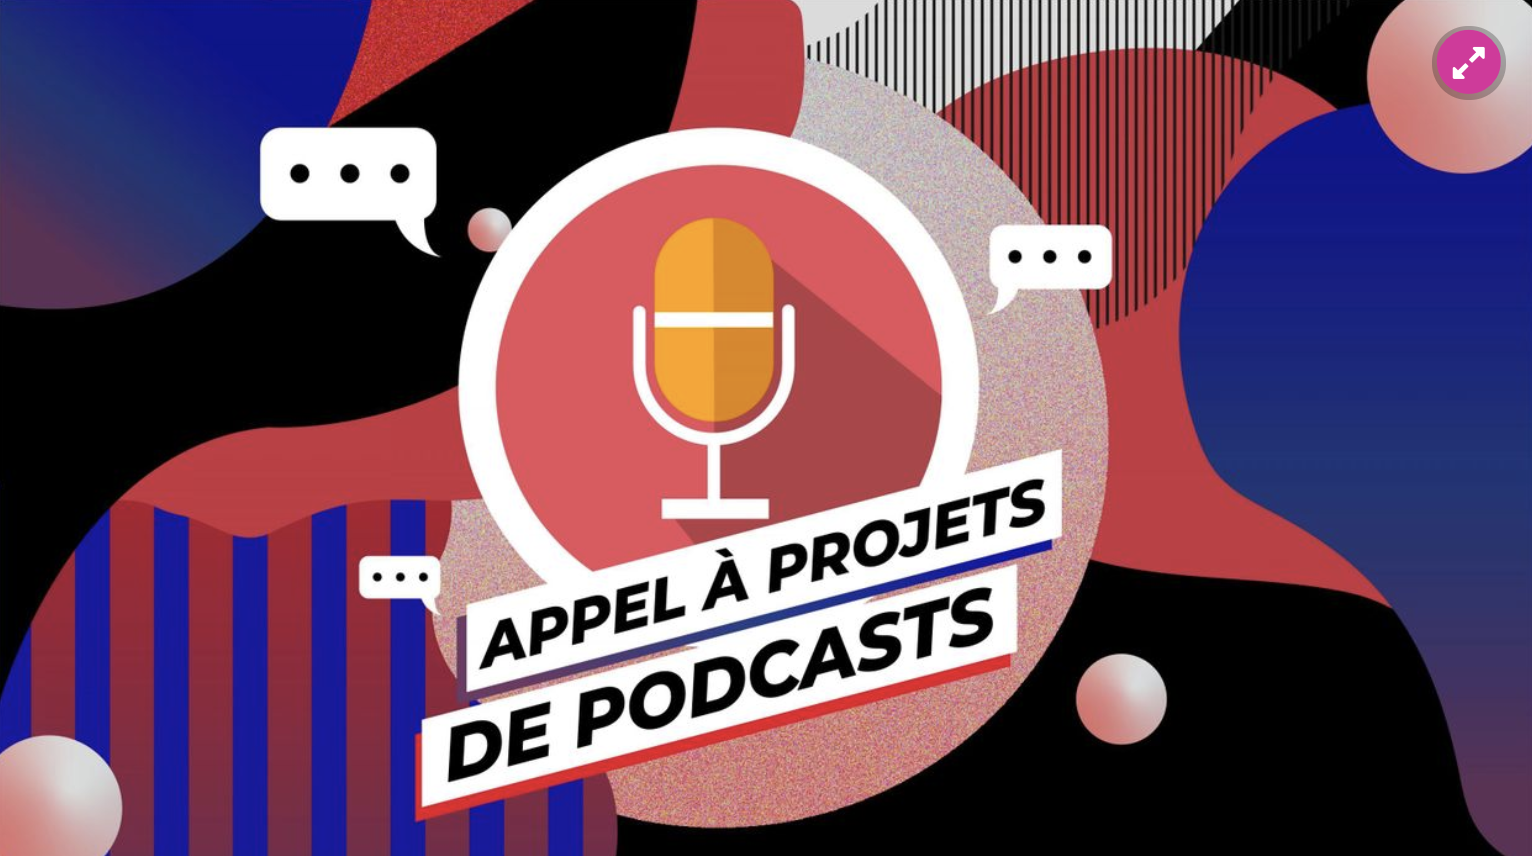 La RTBF lance un nouvel appel à projets de podcasts natifs